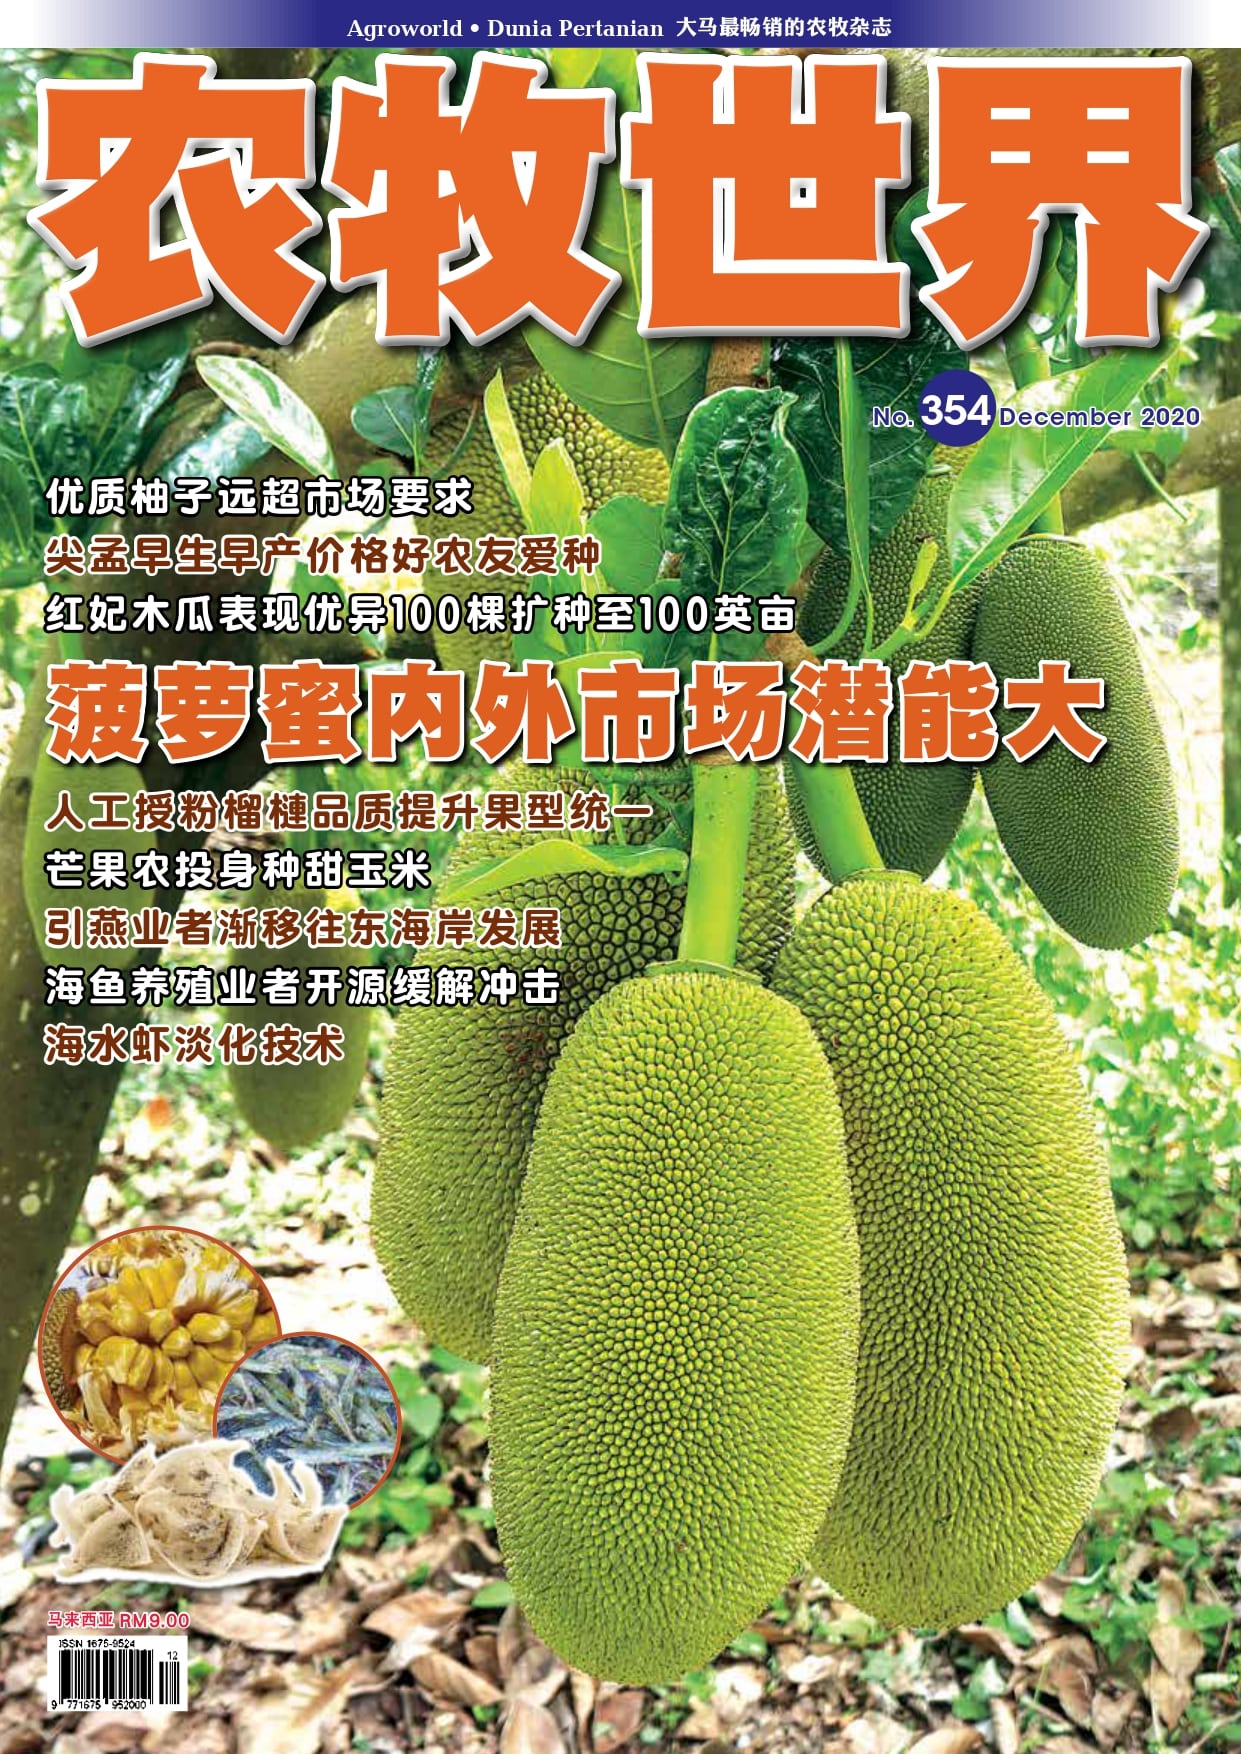 杂志：菠萝蜜在马来西亚潜力巨大 - 农牧世界